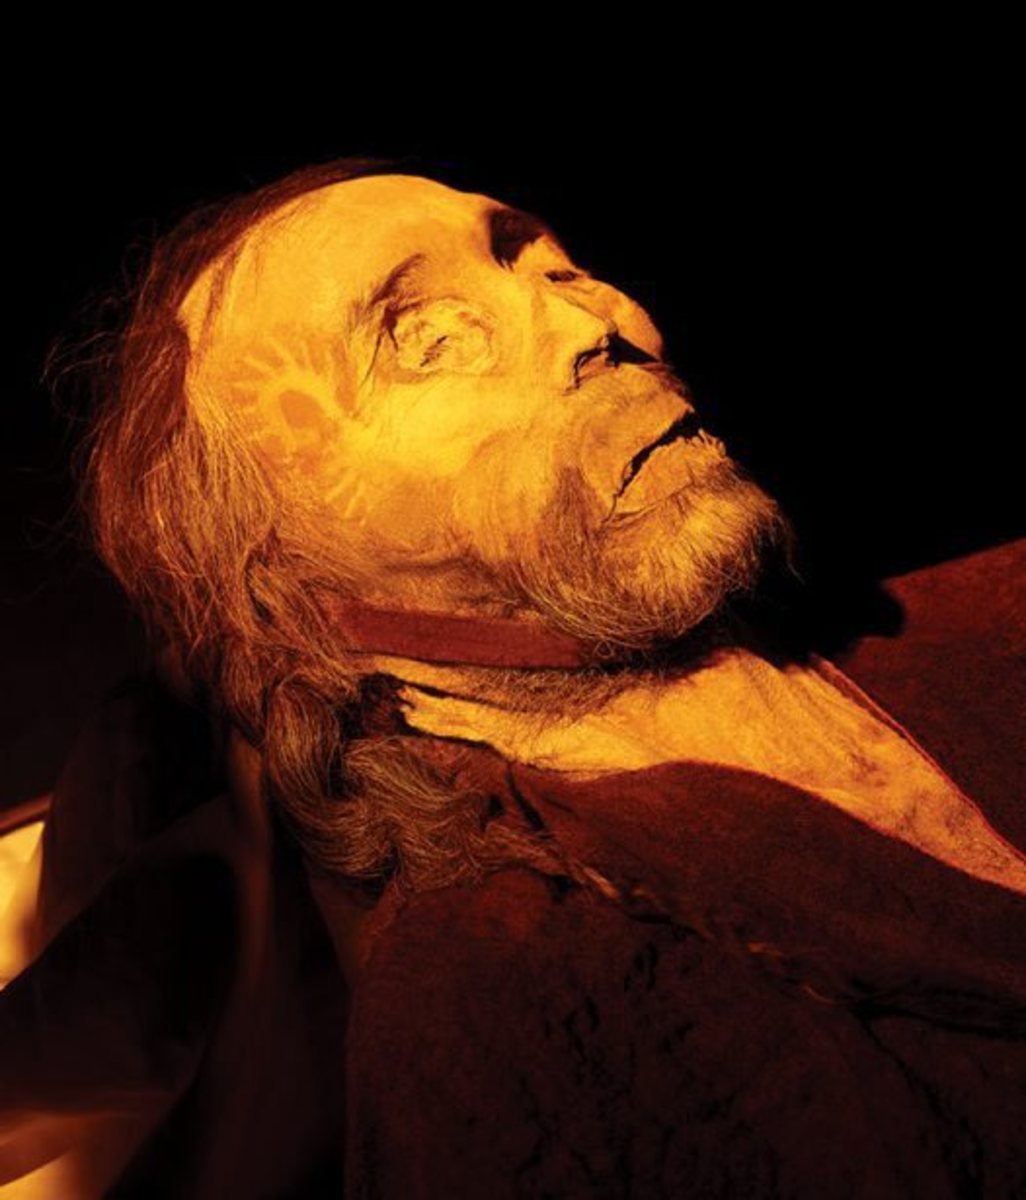 He looks like he is sleeping, but he is over 4,000 years old!